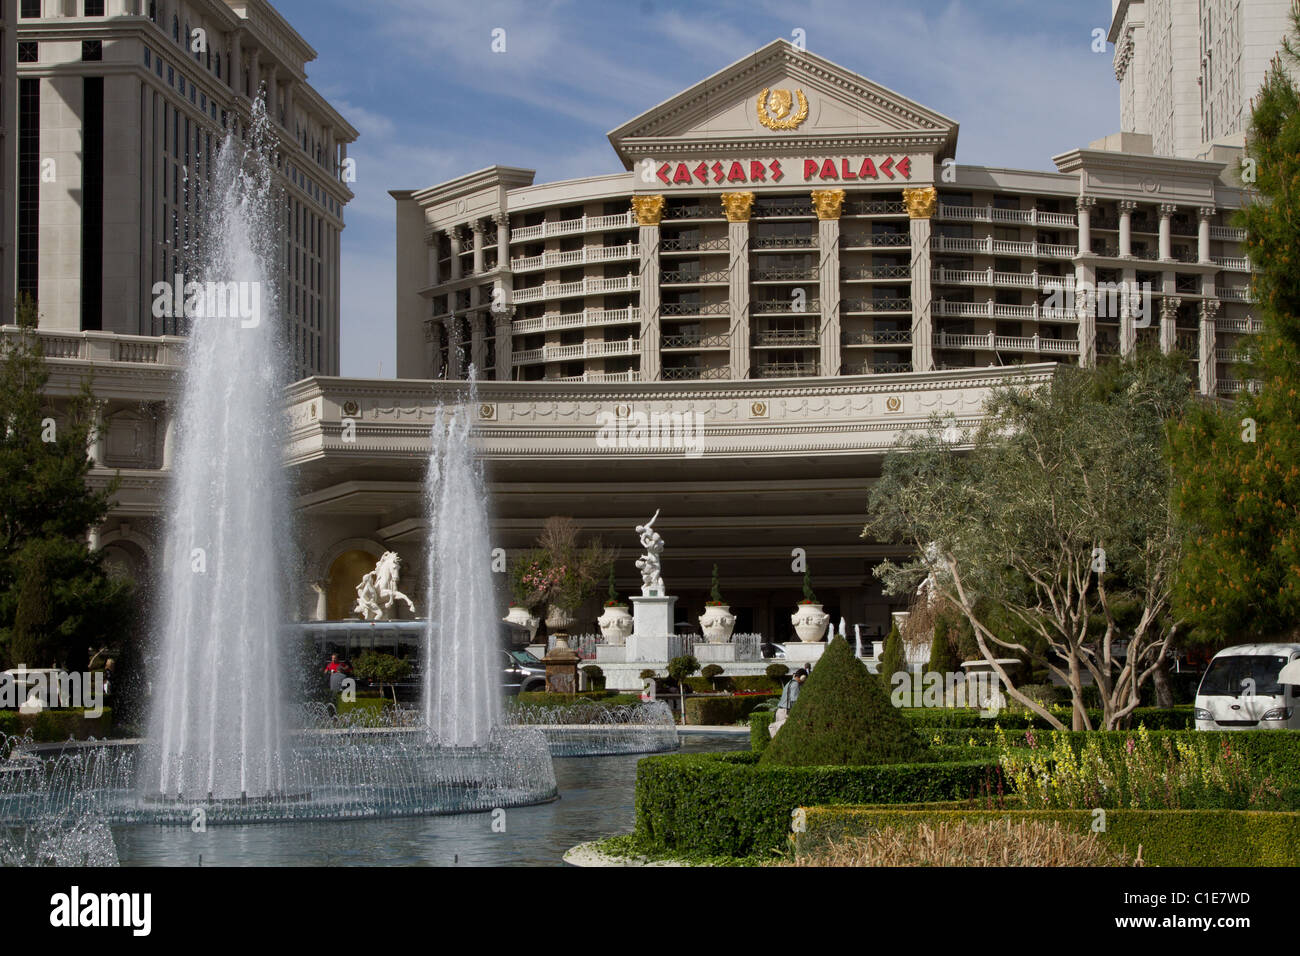 La entrada frontal del hotel Caesar Palace en Las Vegas Fotografía de stock  - Alamy